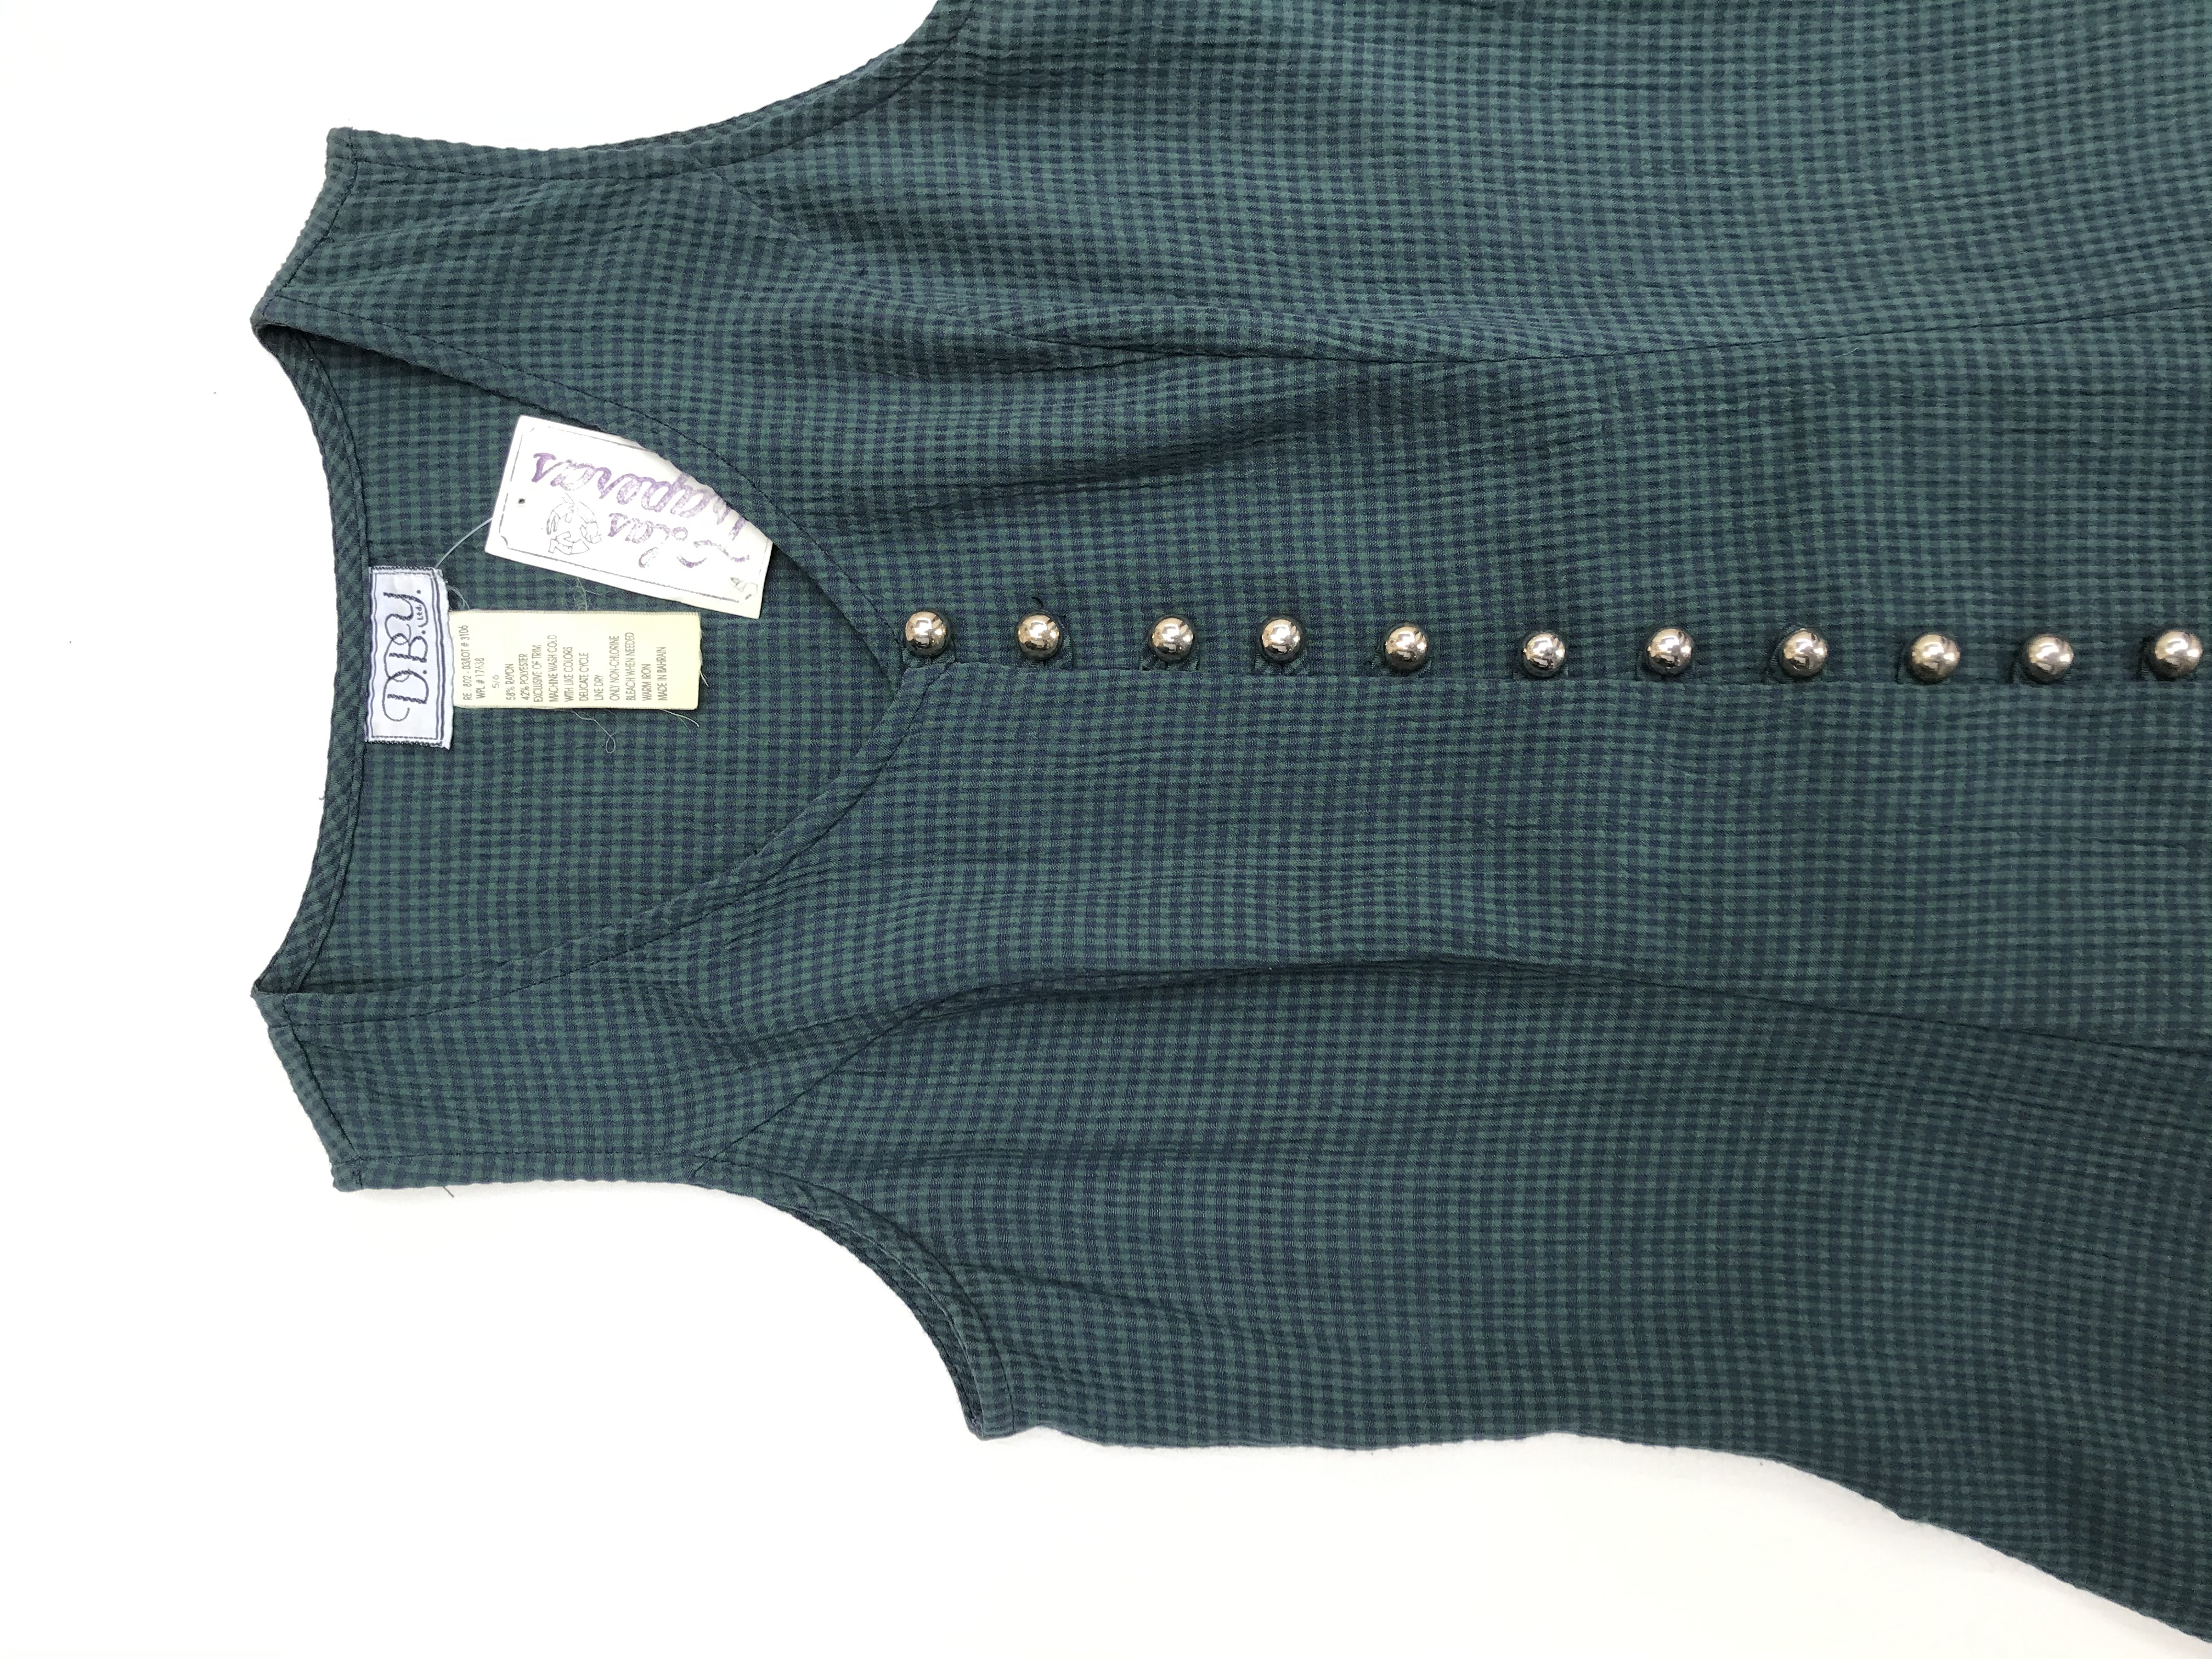 Vestido vintage verde con cuadritos azules, fila de botones, pasador en la espalda y falda en A. Largo 84cm